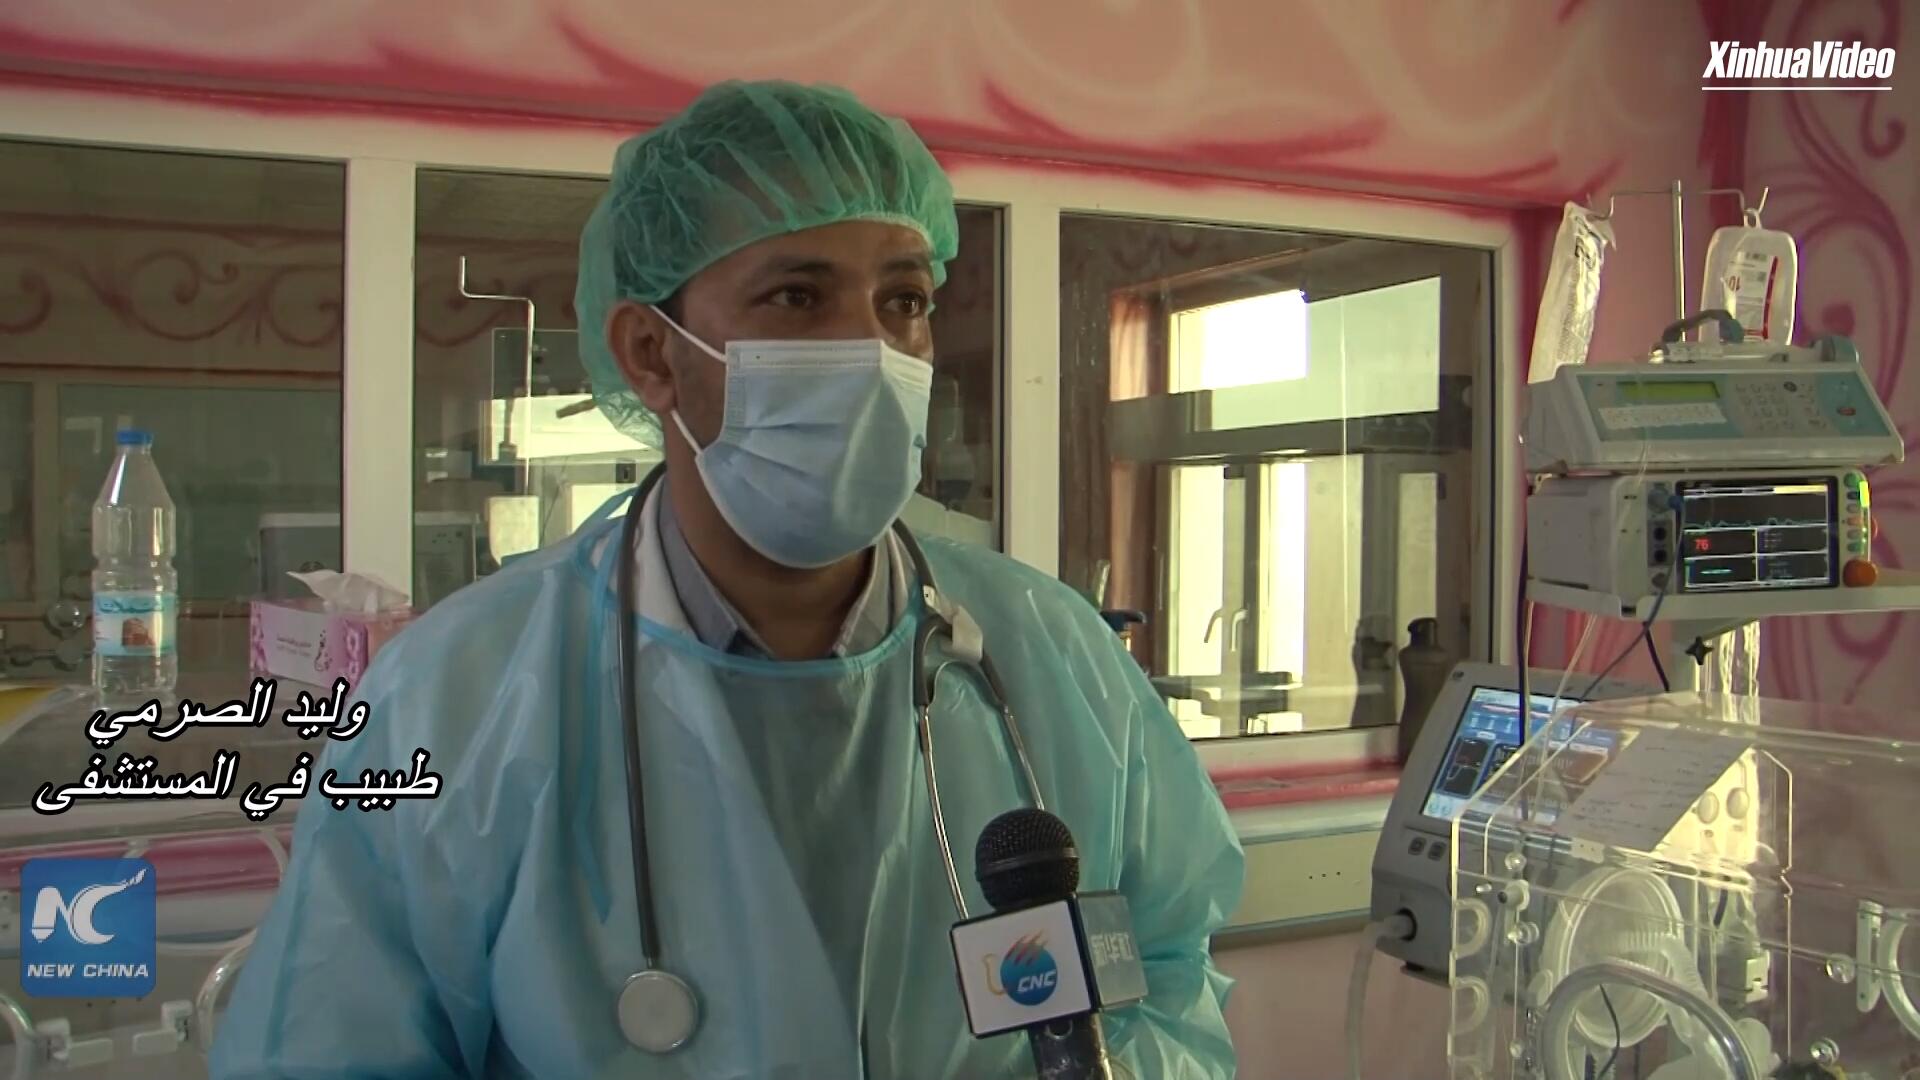 فيديو: مستشفى يعلن حاجة توأمين يمنيين ملتصقين إلى جراحة تنقذ حياتهما في الخارج